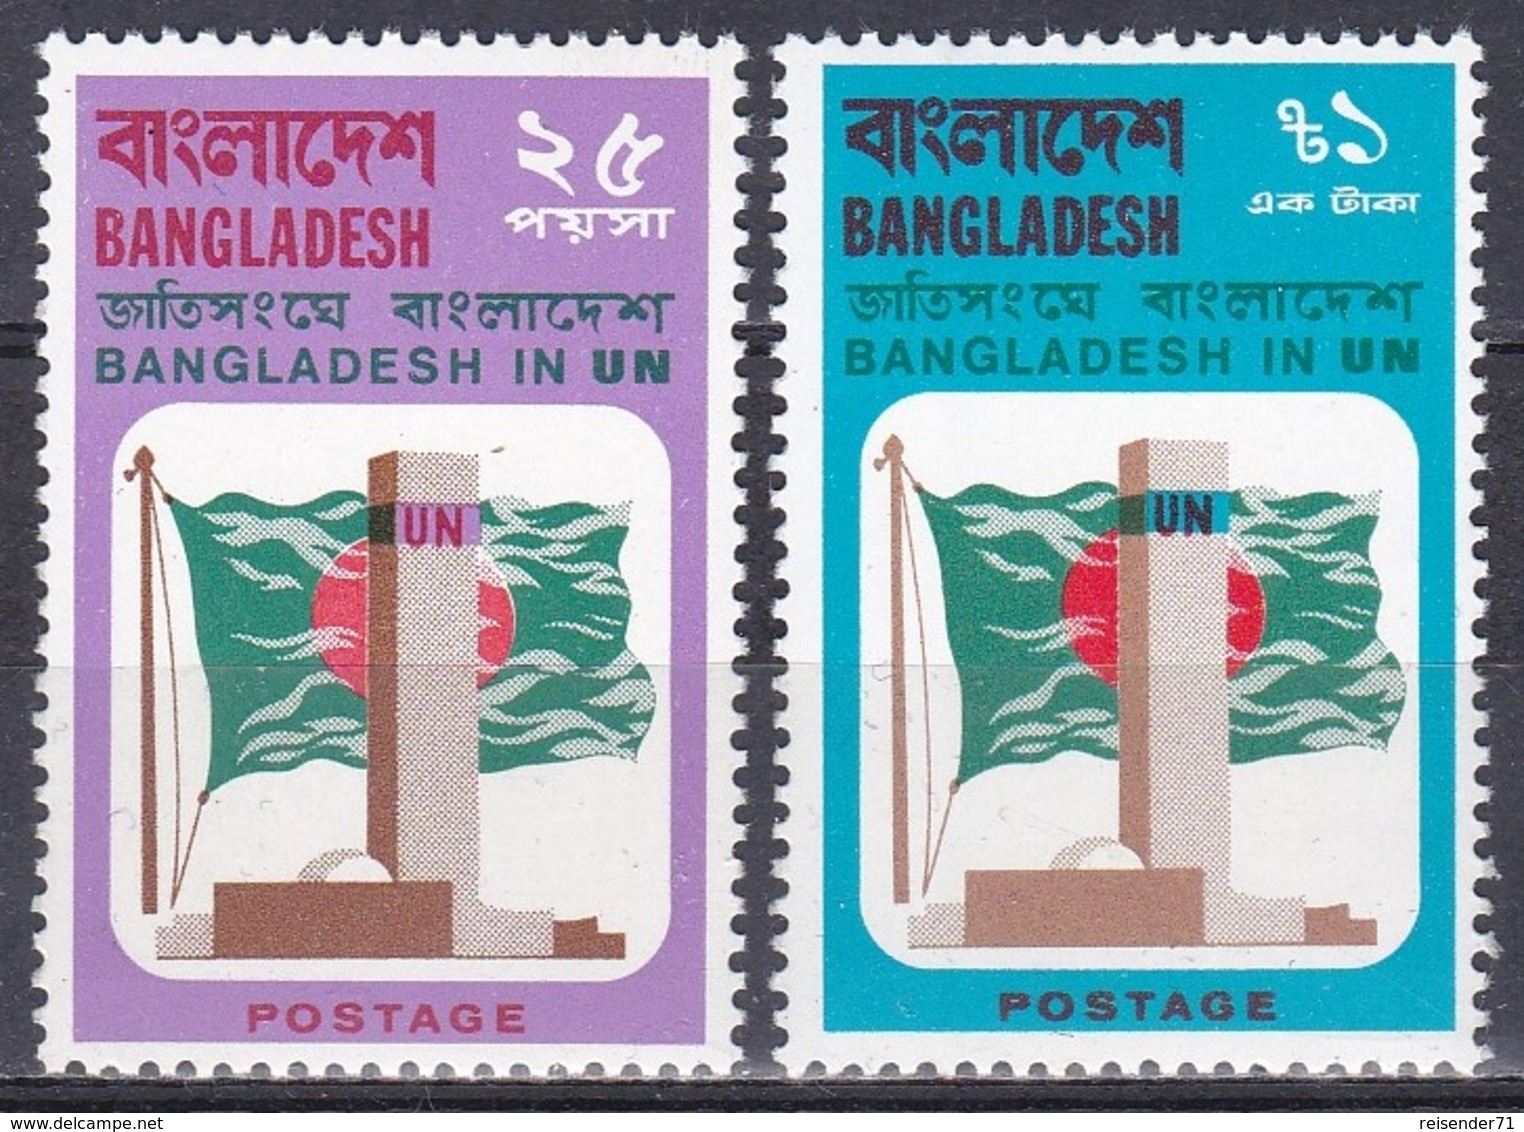 Bangladesch Bangladesh 1974 Organisationen UNO ONU Bauwerke Buildings Fahnen Flaggen Flags, Mi. 43-4 ** - Bangladesch